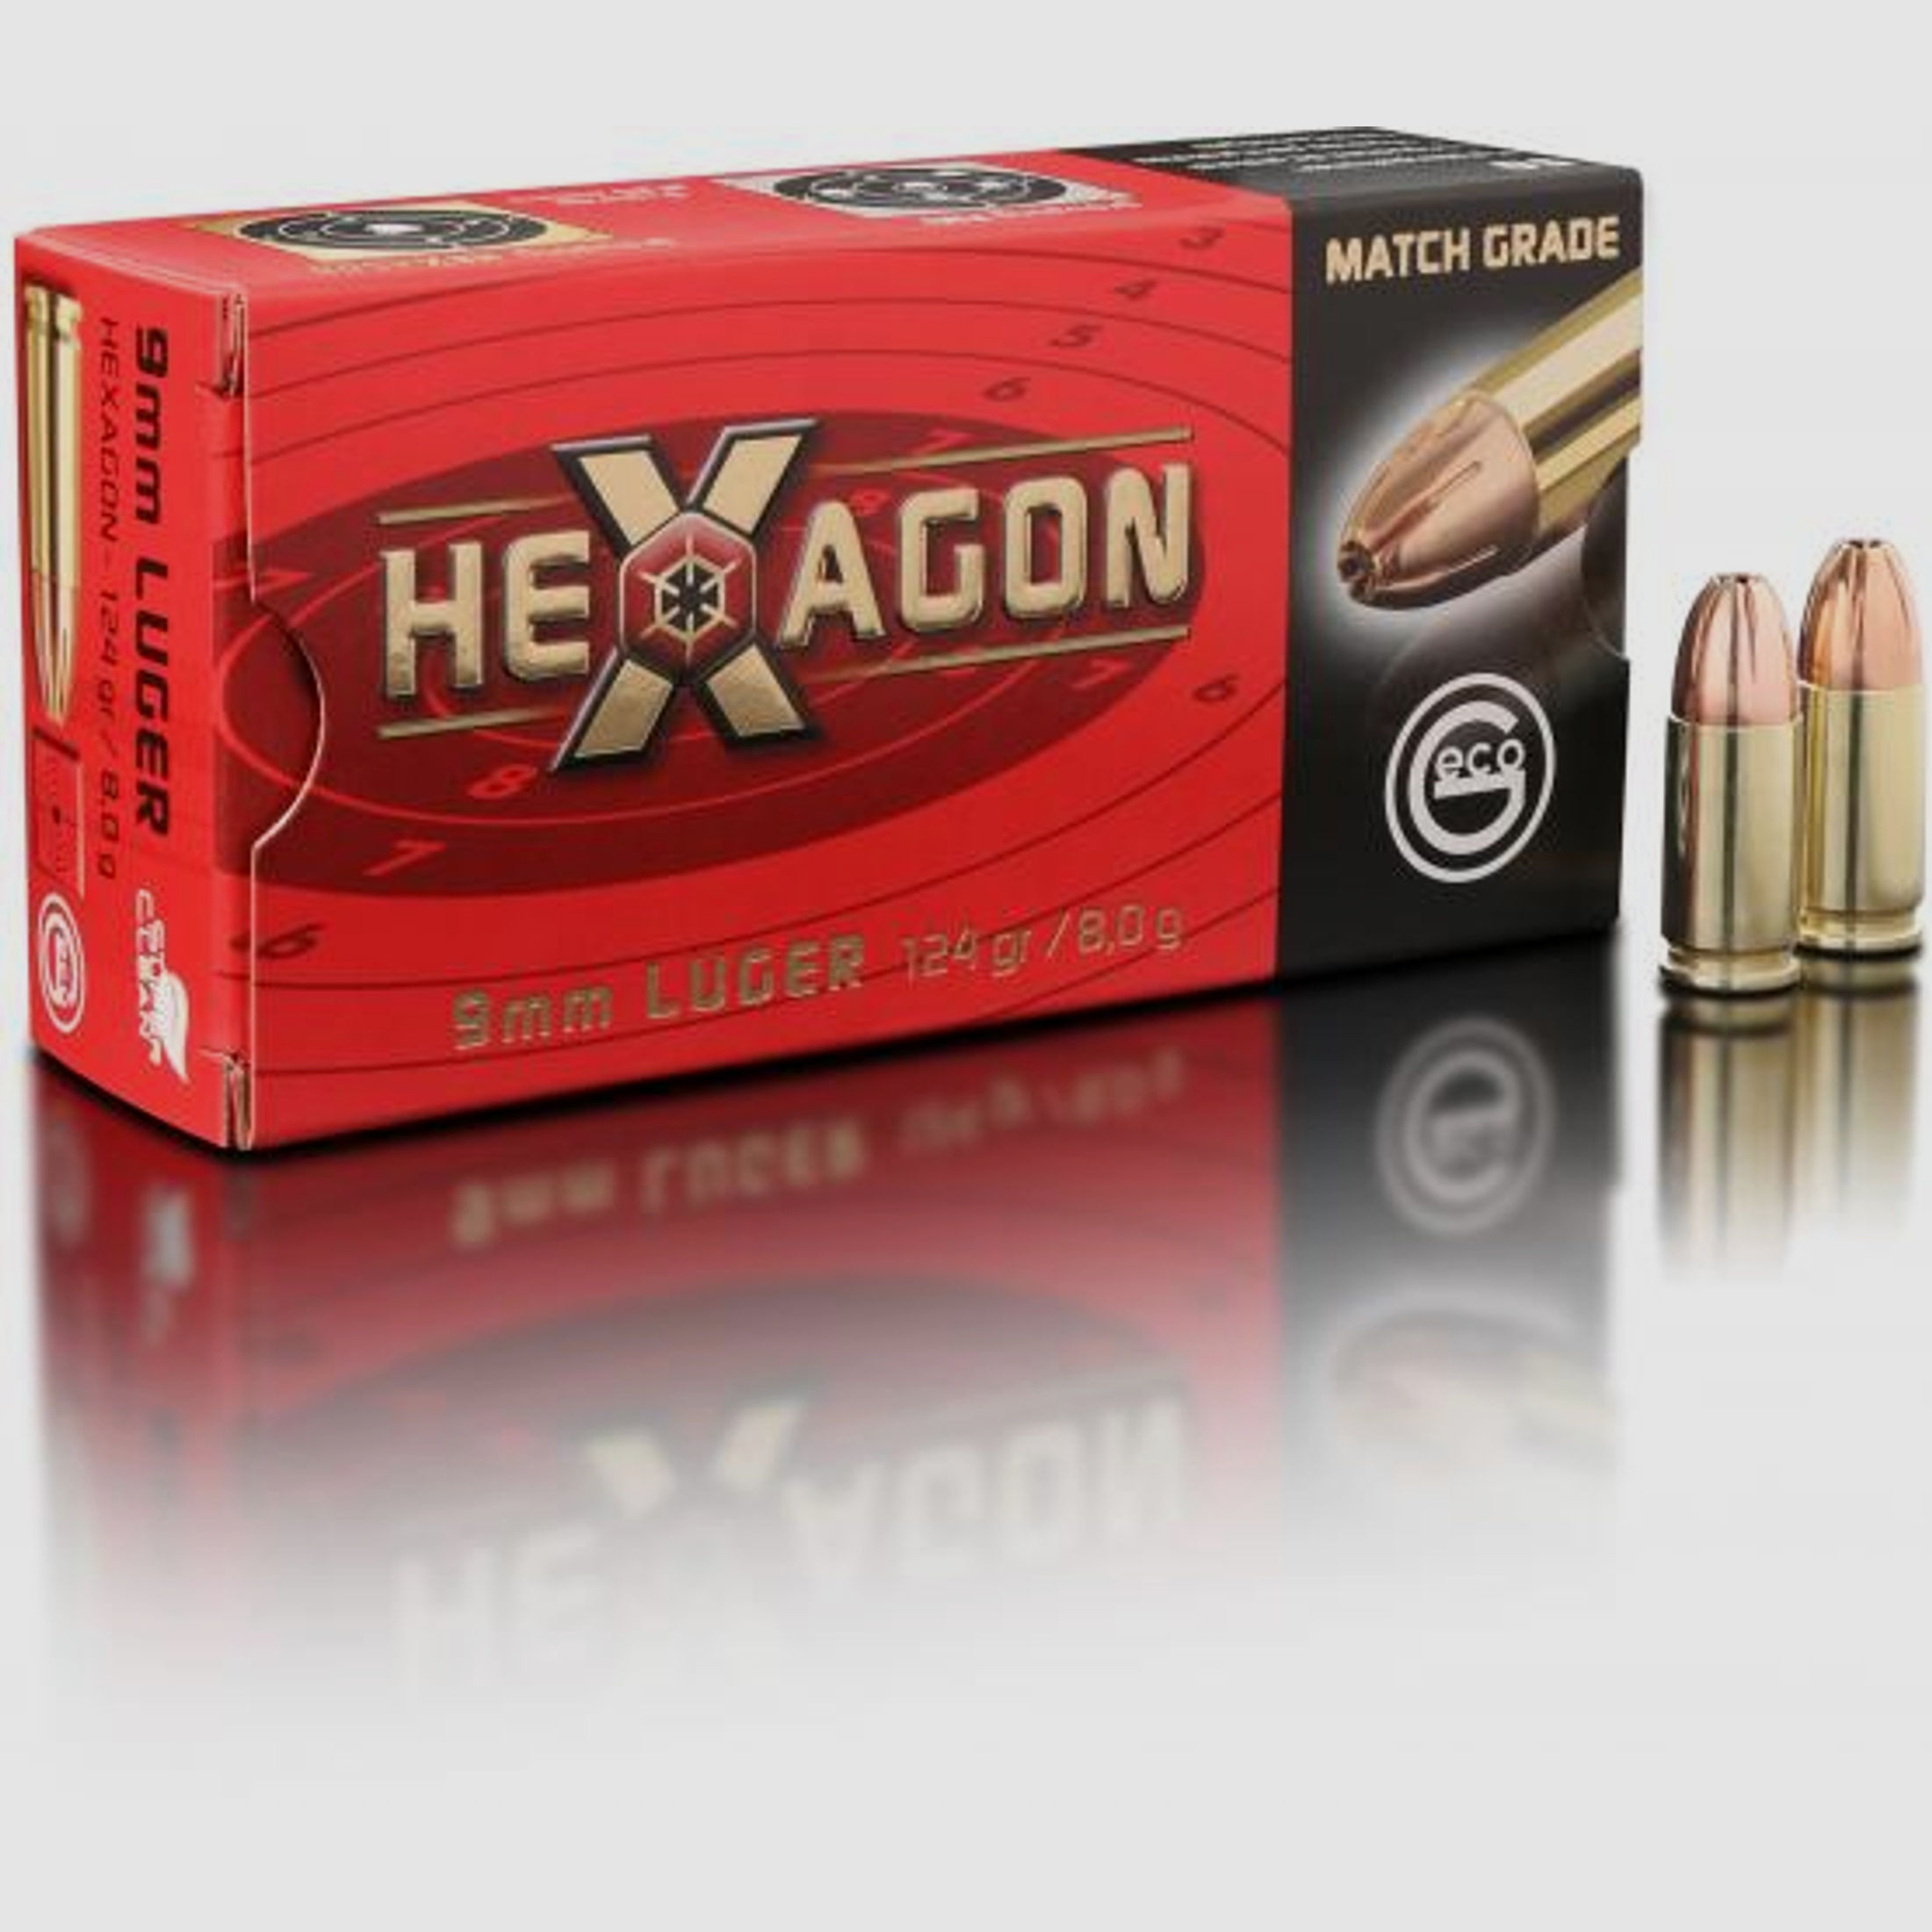 Geco 9mm Luger Hexagon SX 124grs.